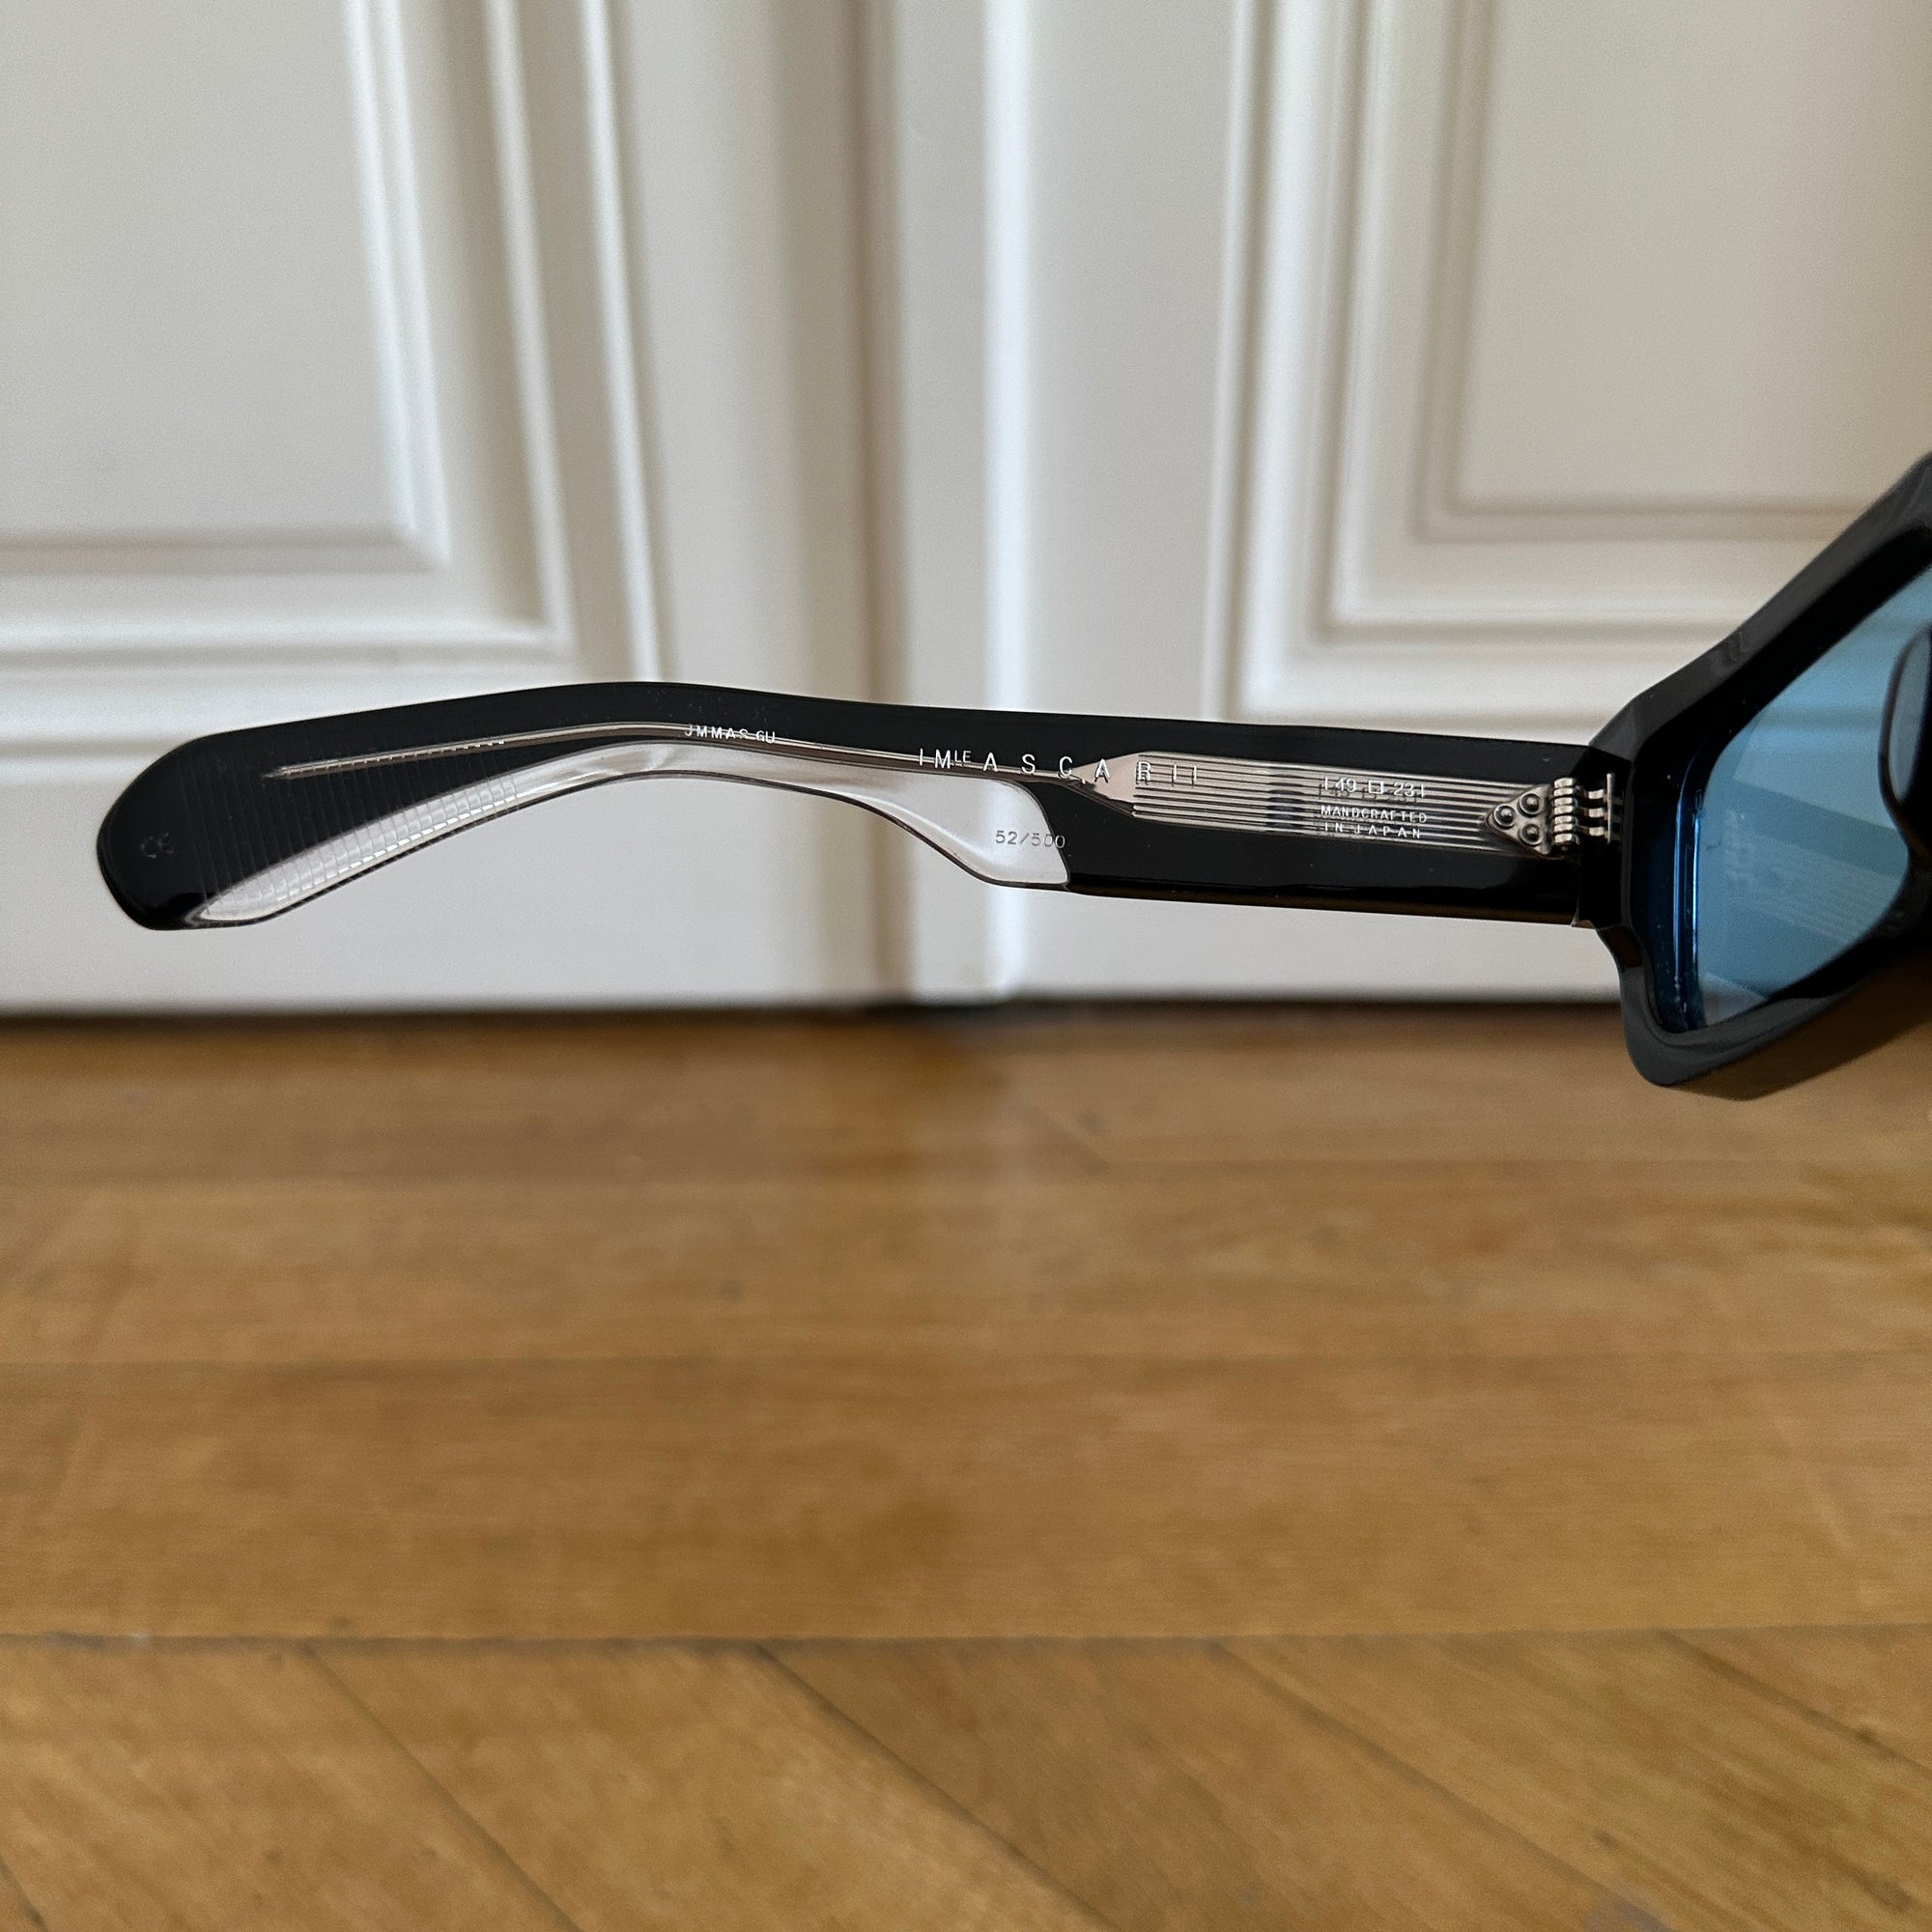 Jacques Marie Mage Ascari 1 of 500 Sunglasses